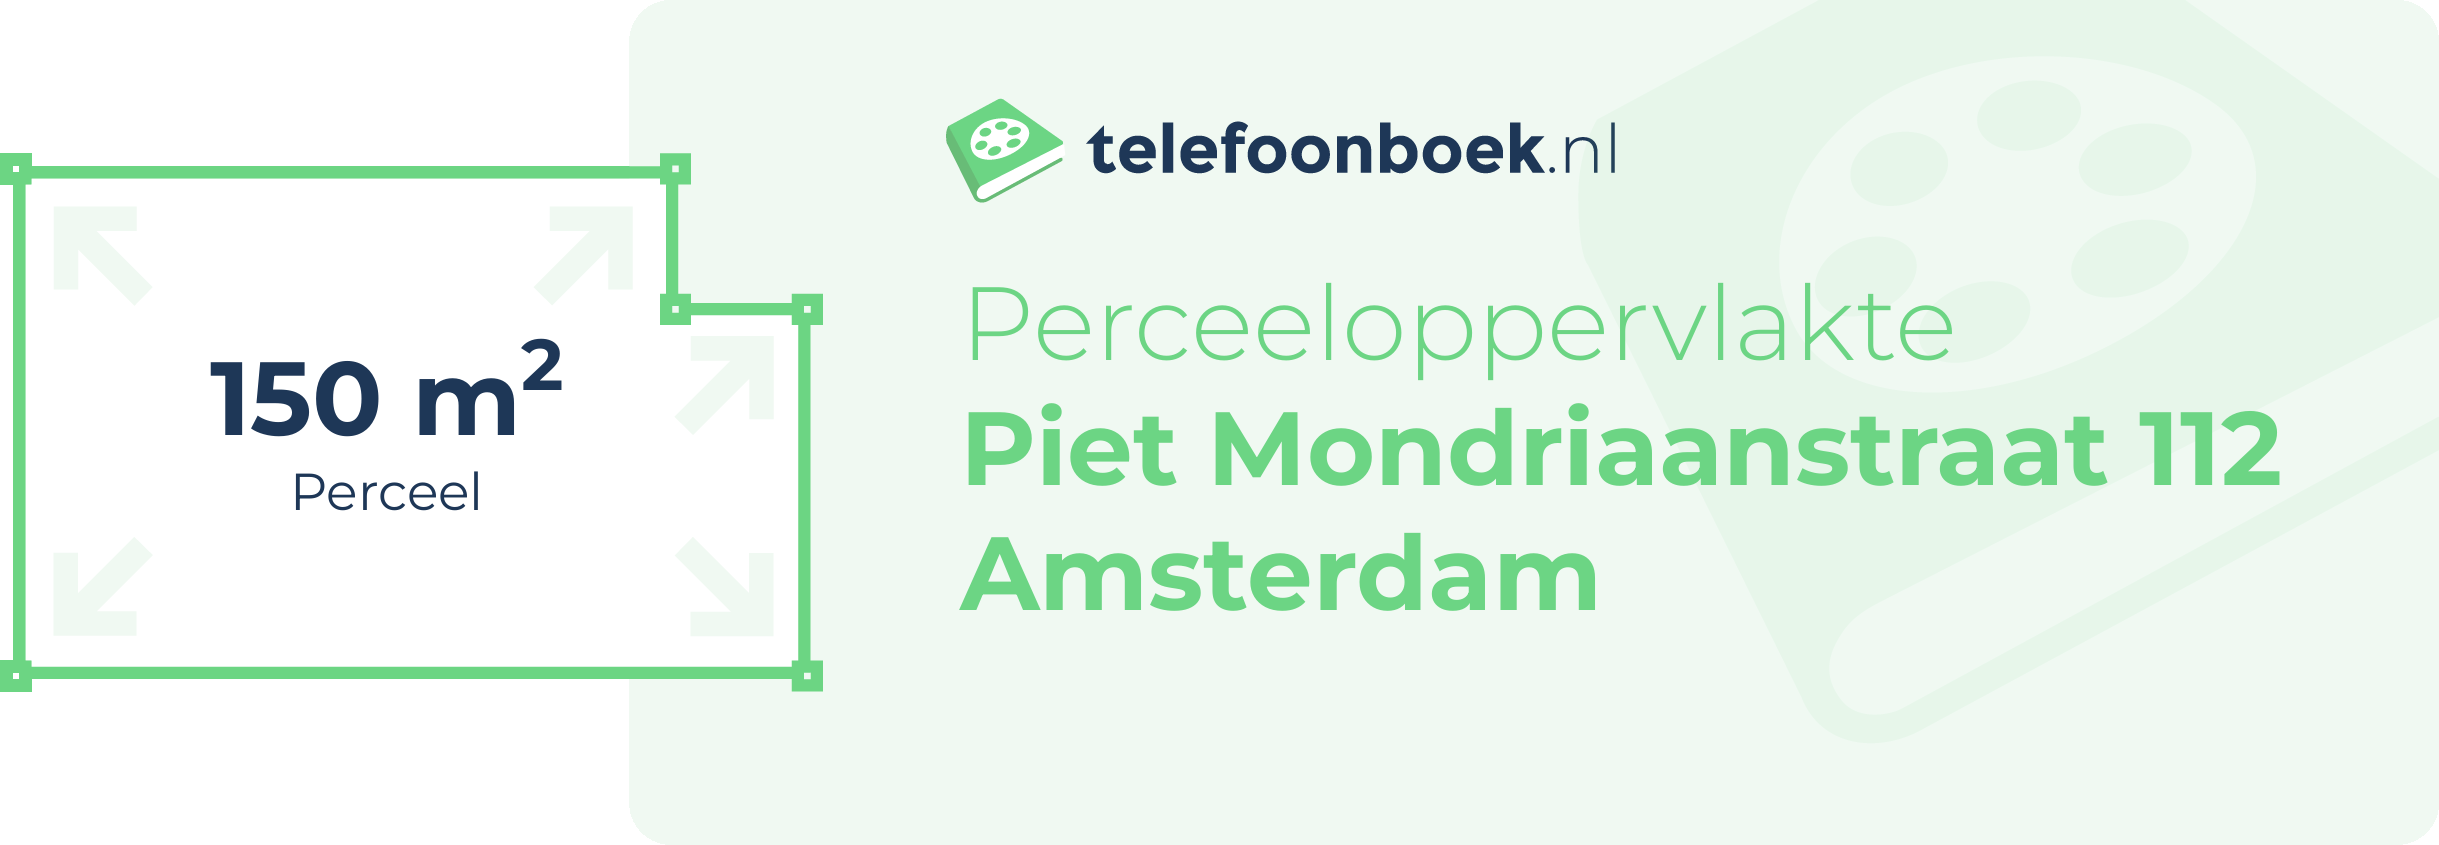 Perceeloppervlakte Piet Mondriaanstraat 112 Amsterdam